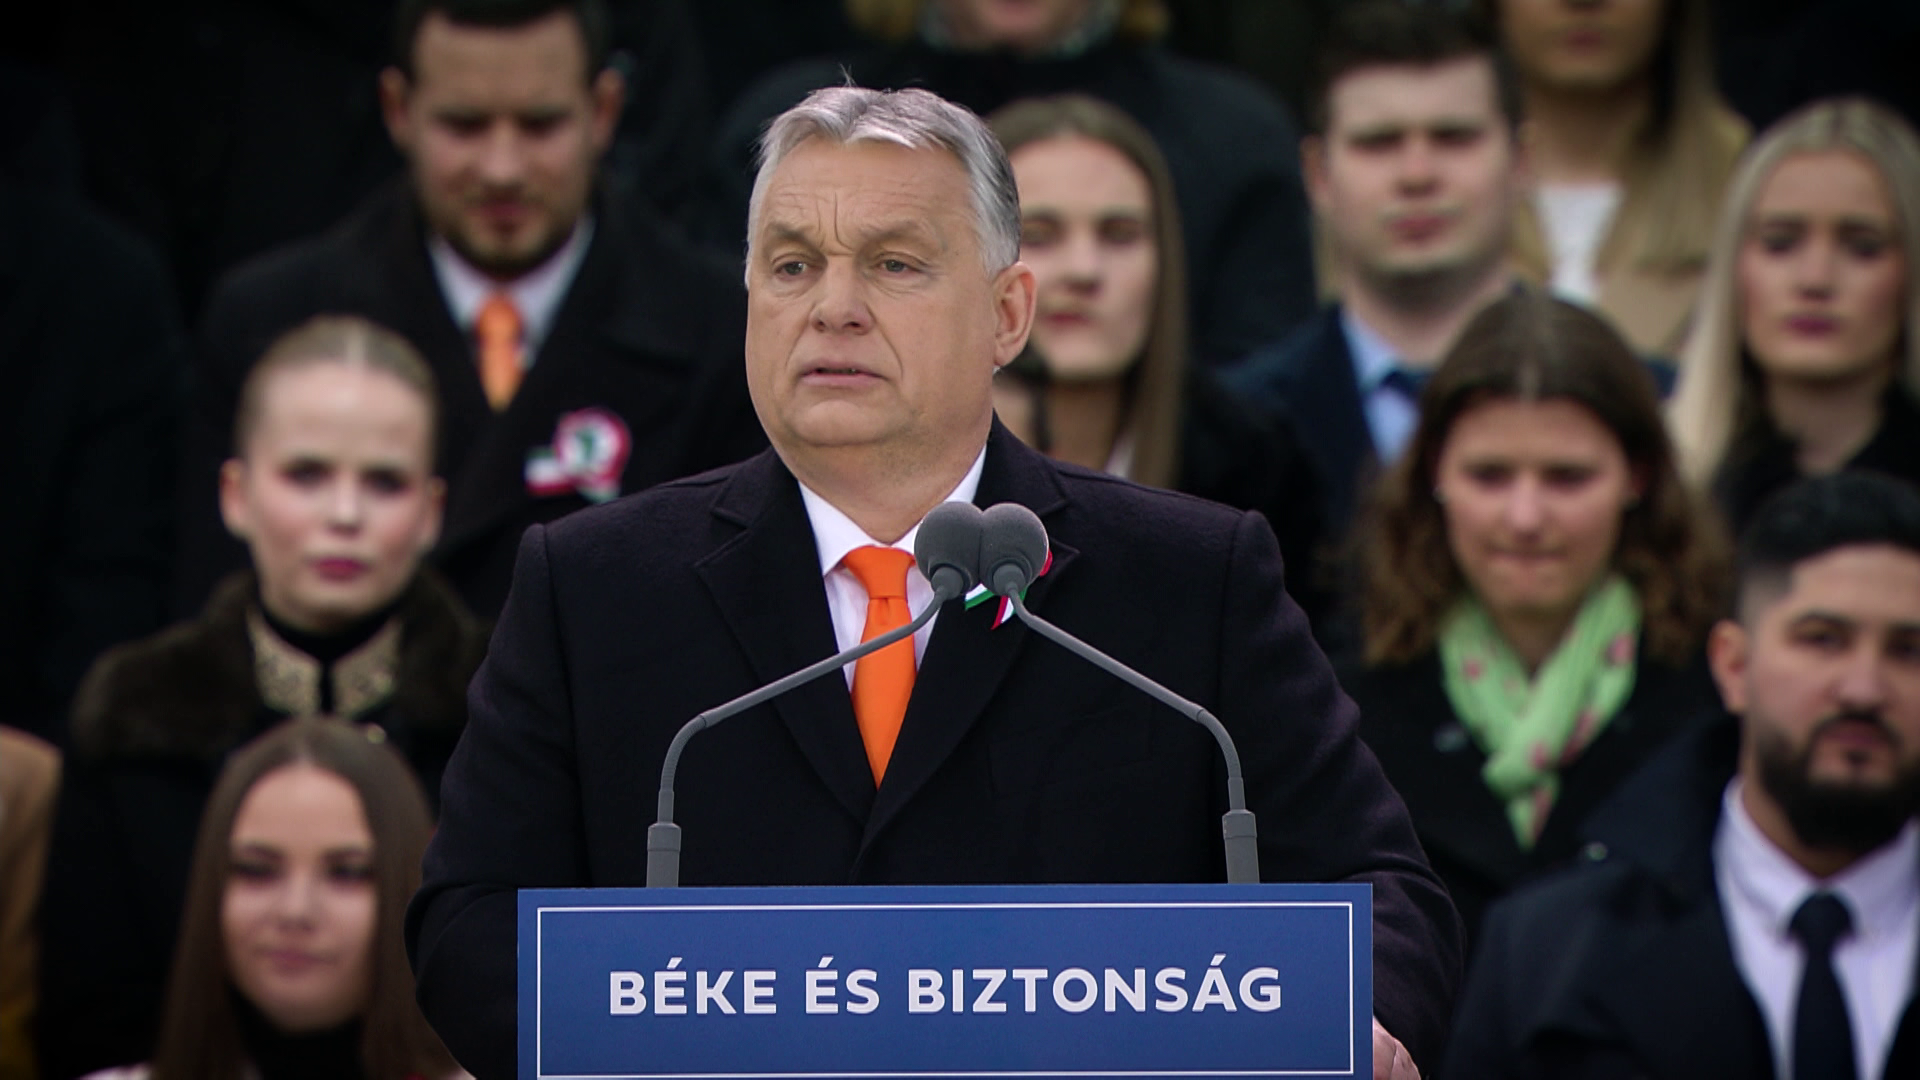 Élőben sugározzuk Orbán Viktor ünnepi beszédét szerdán 15 órától Kiskőrösről 